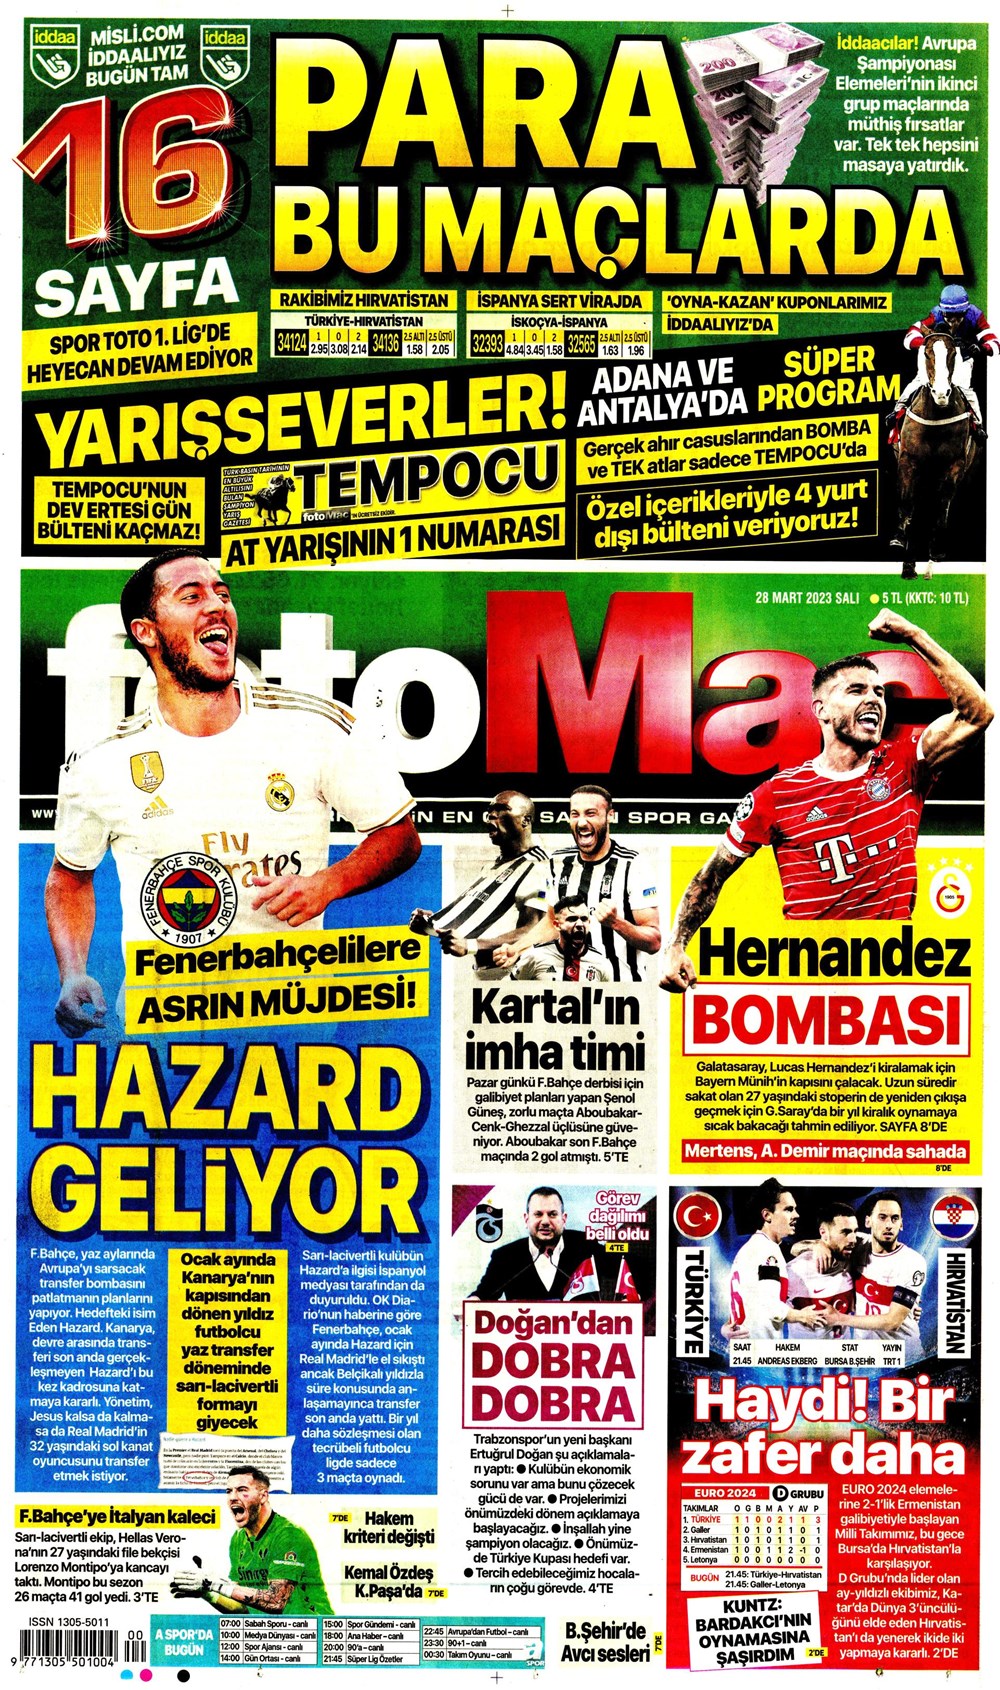 "Vurduğumuz gol olsun" - Sporun manşetleri - 9. Foto